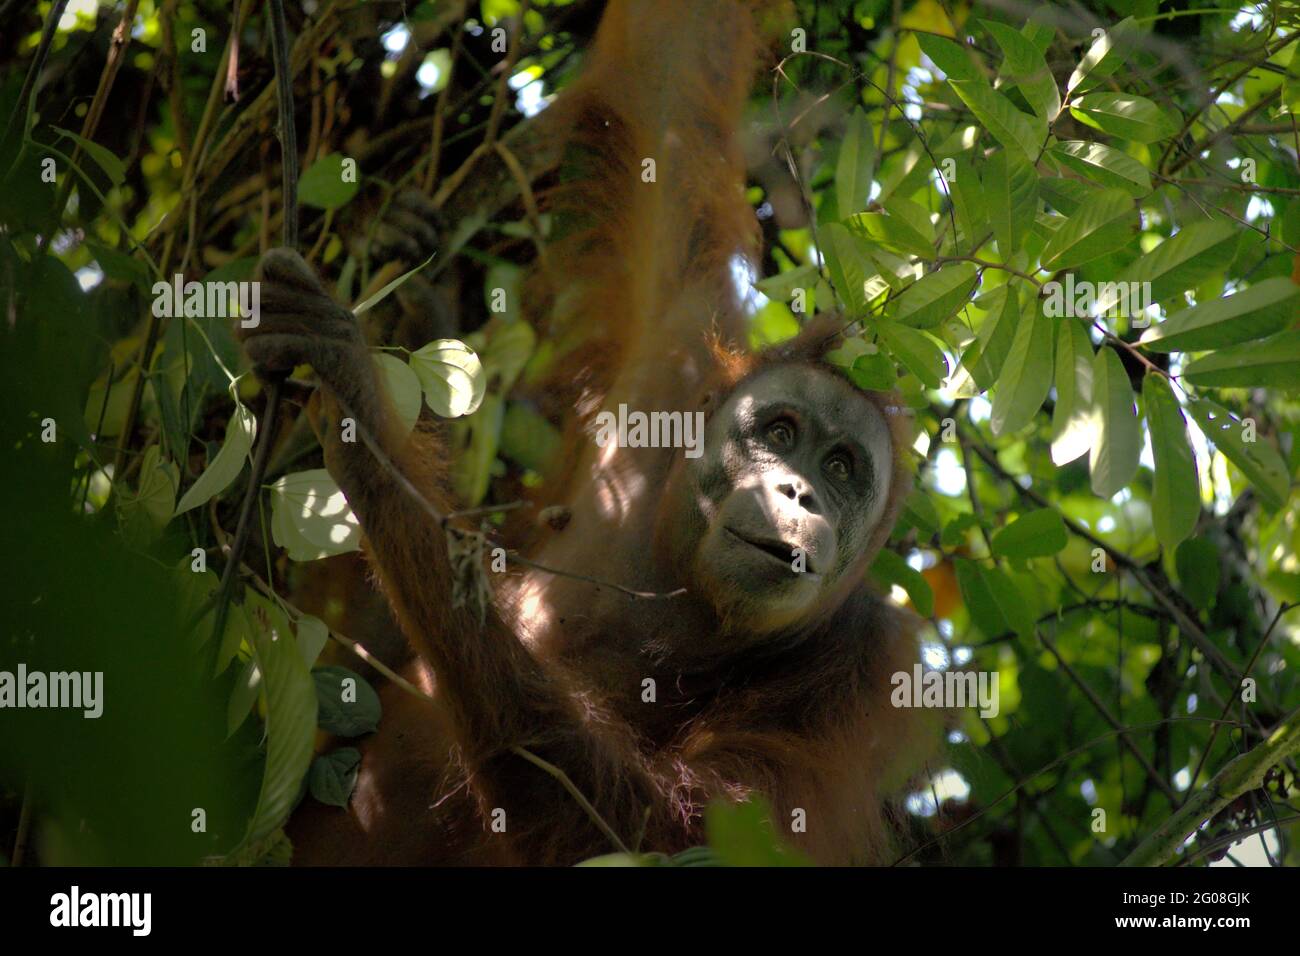 Orangutan selvatico che invecchia nel Parco Nazionale di Kutai, Kalimantan Est, Indonesia. Sottospecie di orangutano borneano nordorientale (Pongo pygmaeus morio). Oltre alla deforestazione e al bracconaggio, il cambiamento climatico sta portando un maggior rischio di estinzione a questa specie endemica, a rischio critico. Temperature più elevate, condizioni climatiche insolite ed estreme, ad esempio, influenzeranno la disponibilità della loro fornitura alimentare. Foto Stock